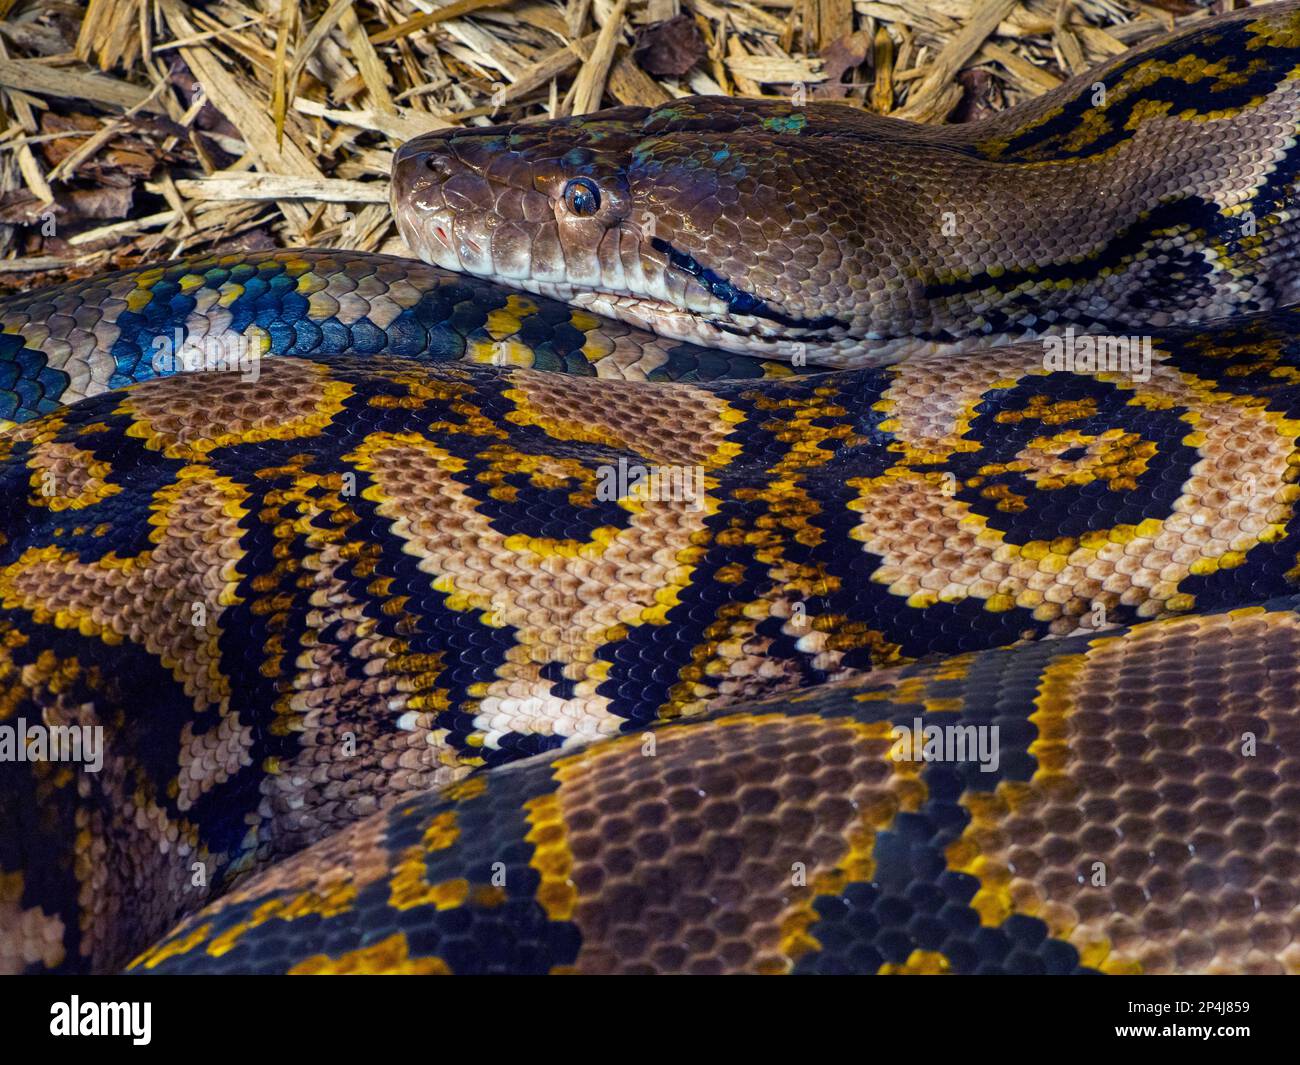 Netzpython Python reticulatus Nahaufnahme der Haut pattens Stockfoto